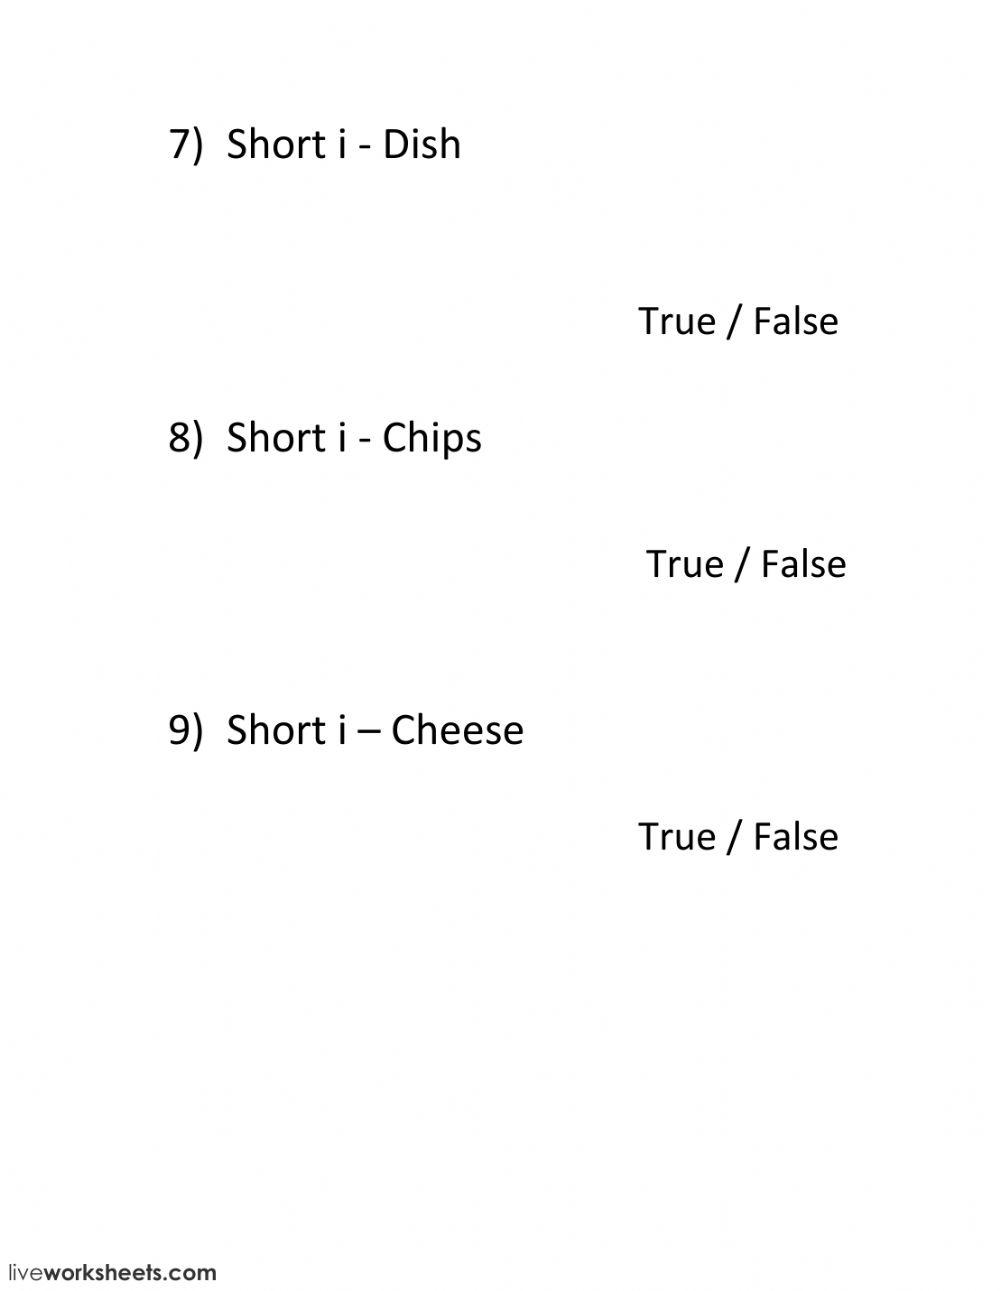 True or false - short i